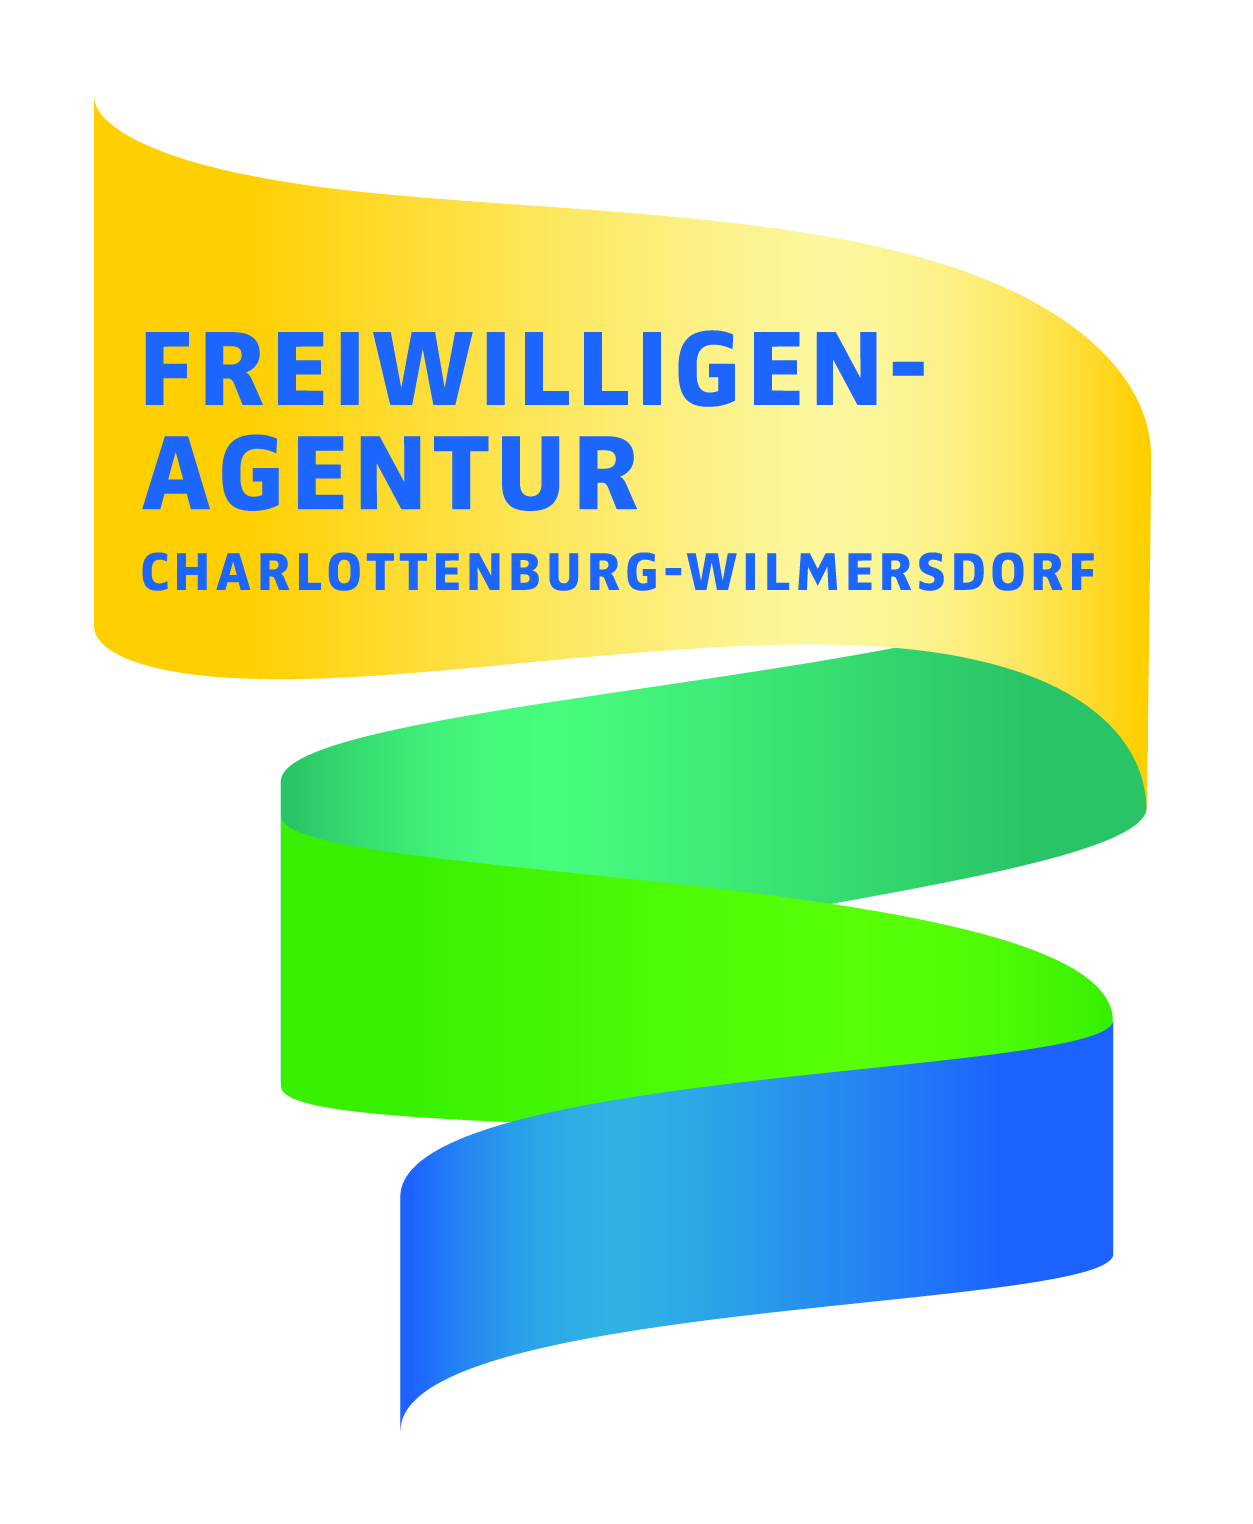 zur Interessenbekundung der Freiwilligenagentur Charlottenburg-Wilmersdorf e.V.